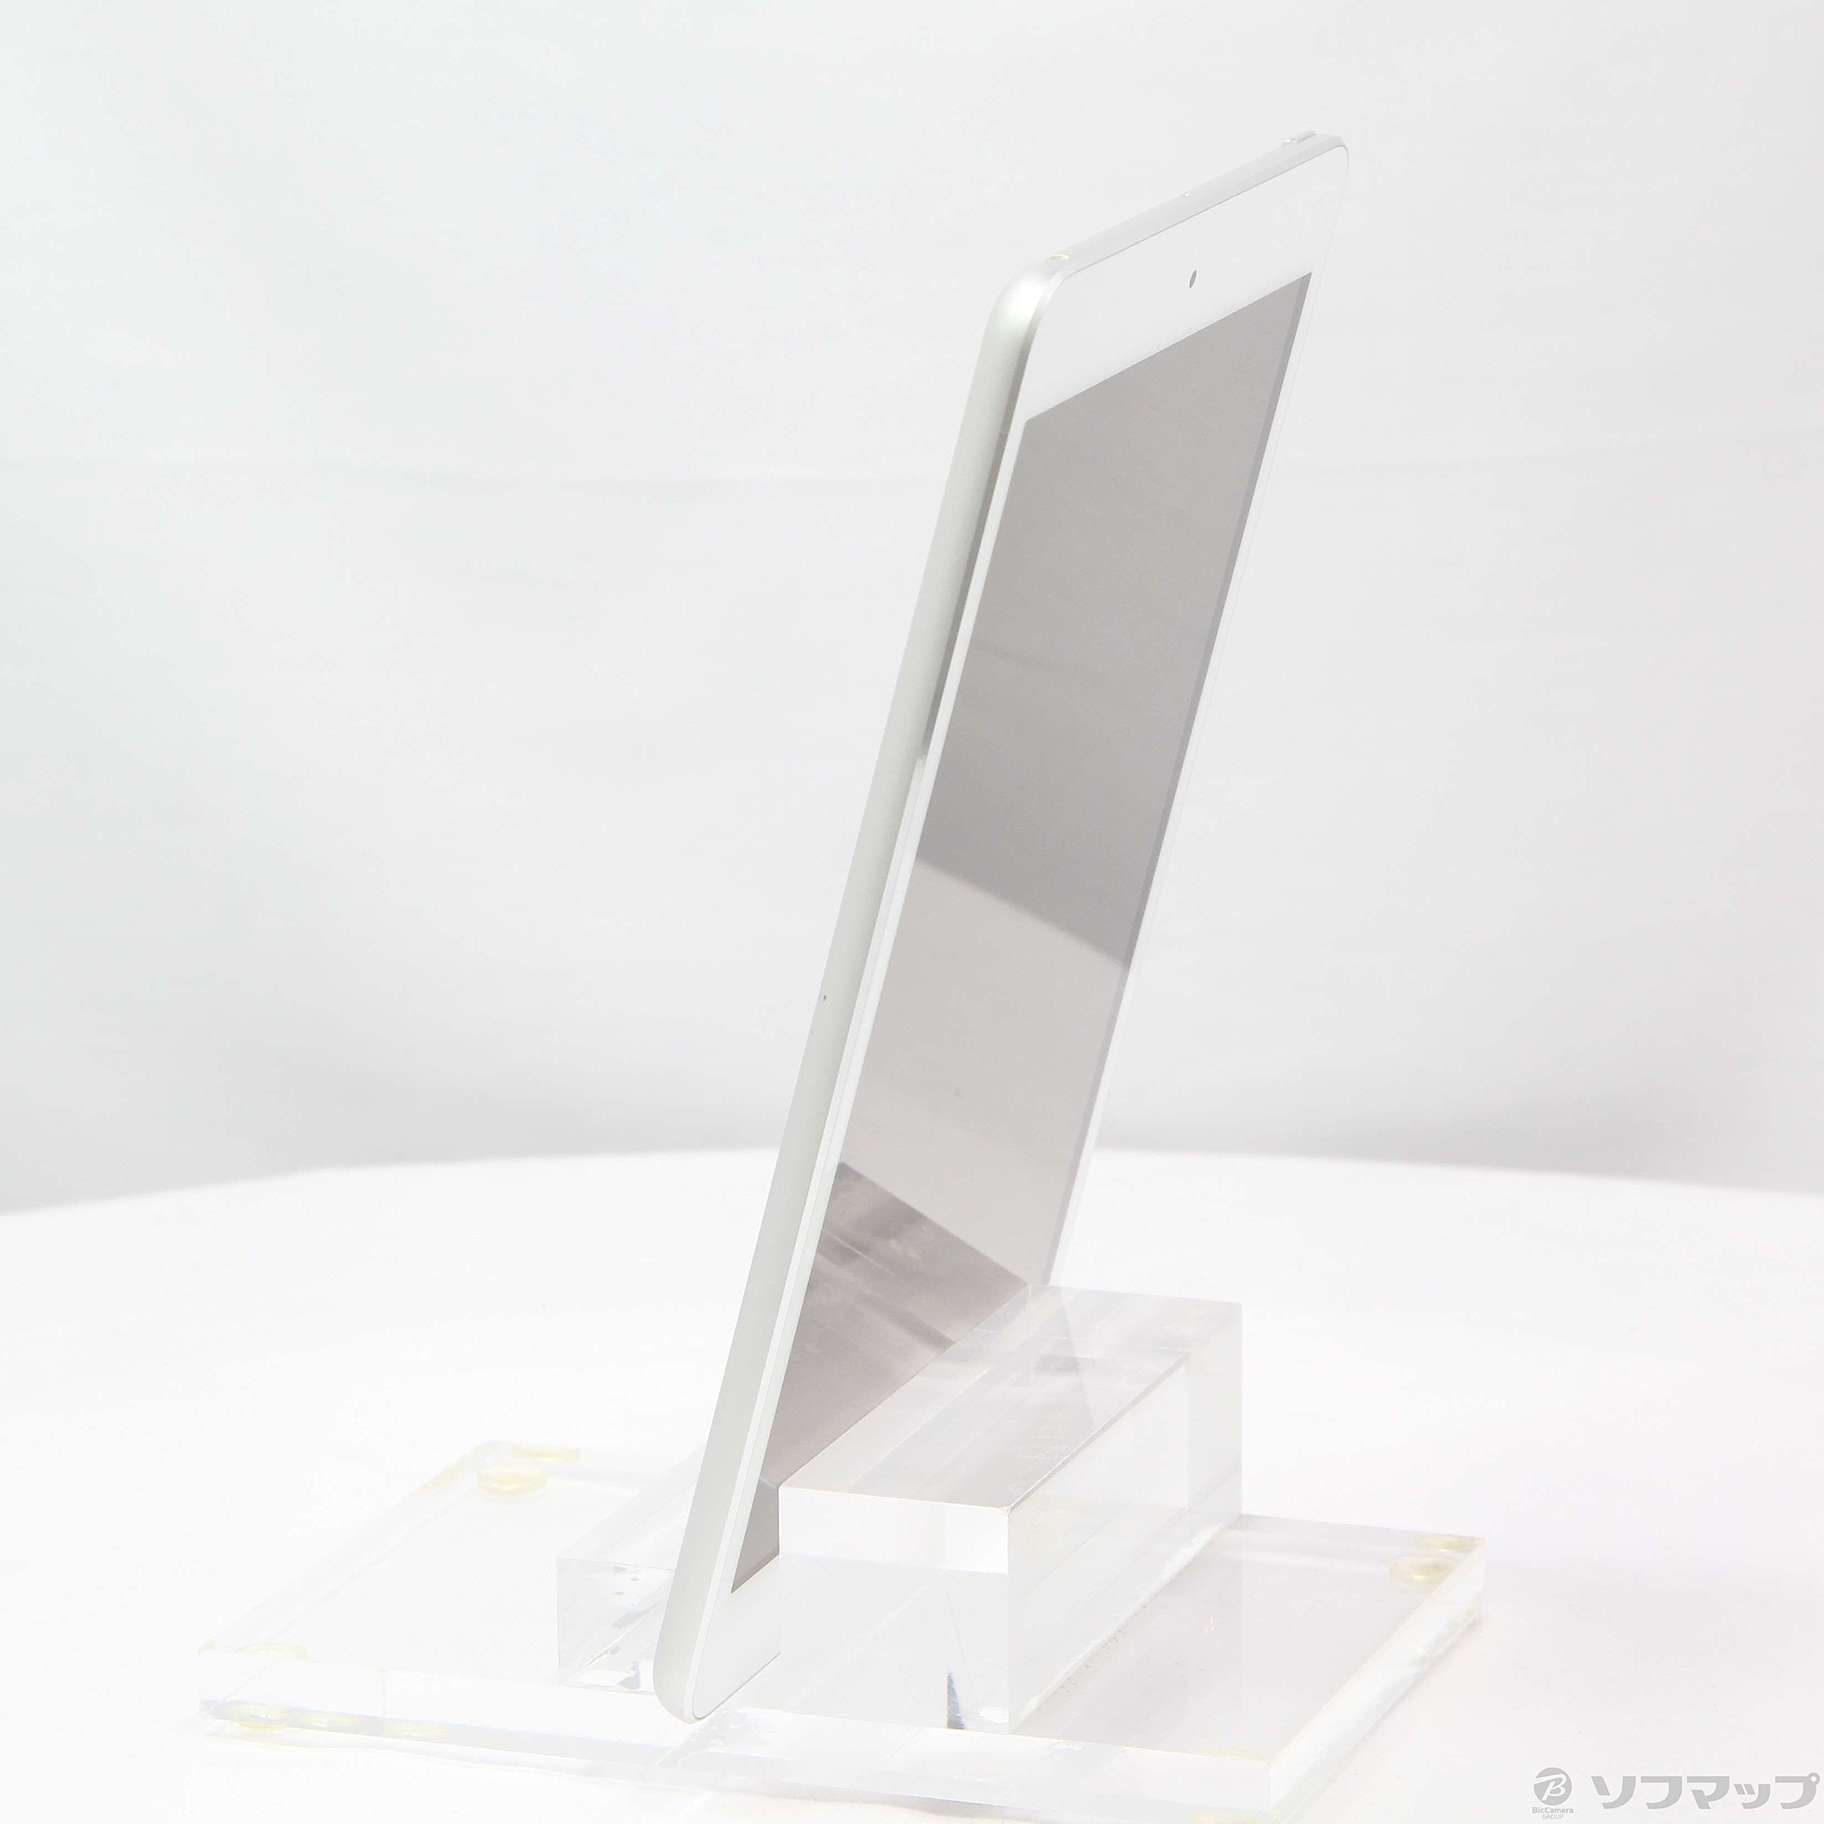 iPad mini 2 32GB シルバー FE280J／A Wi-Fi